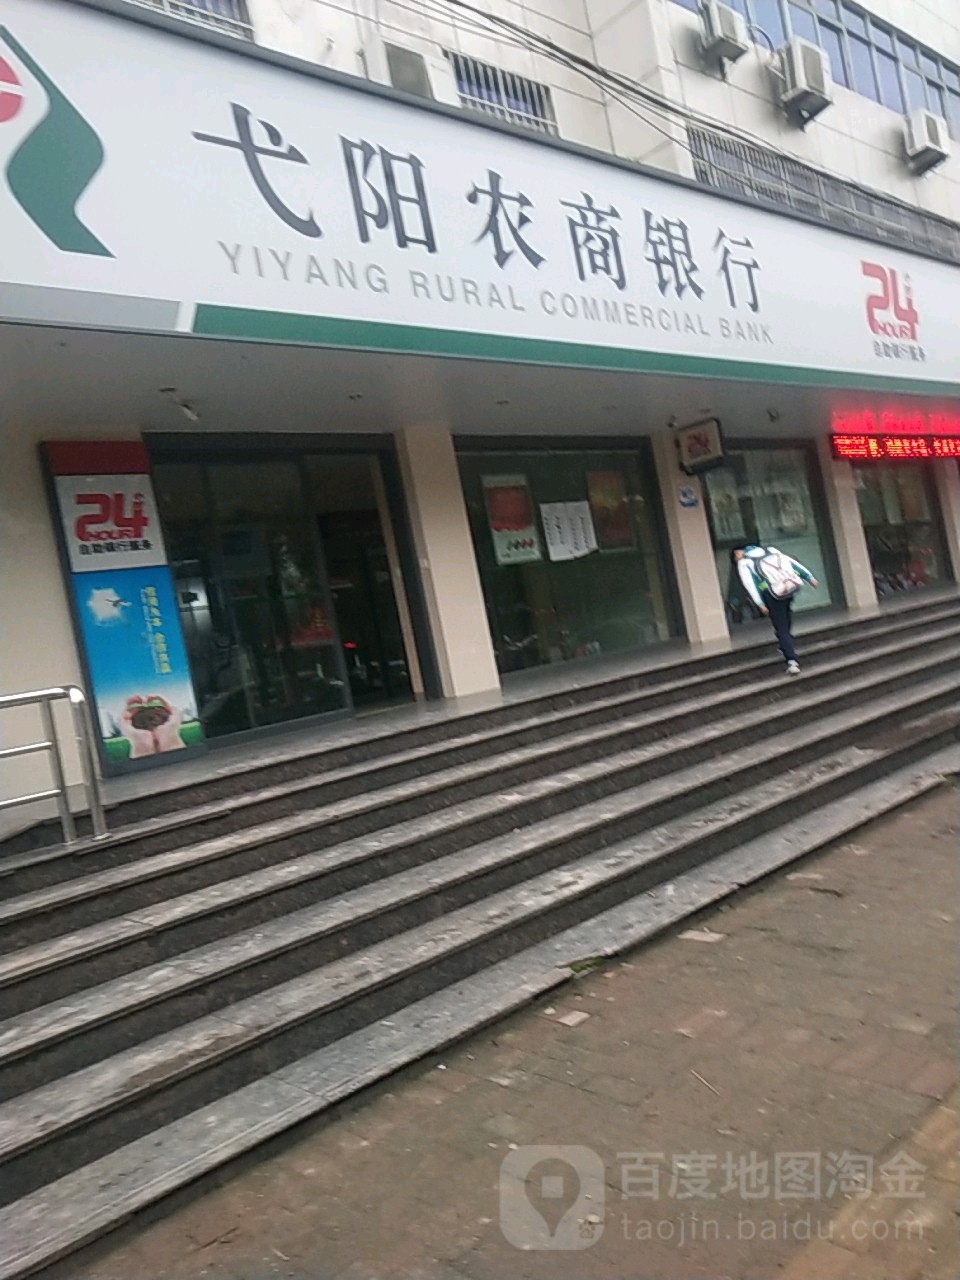 農商銀行ATM